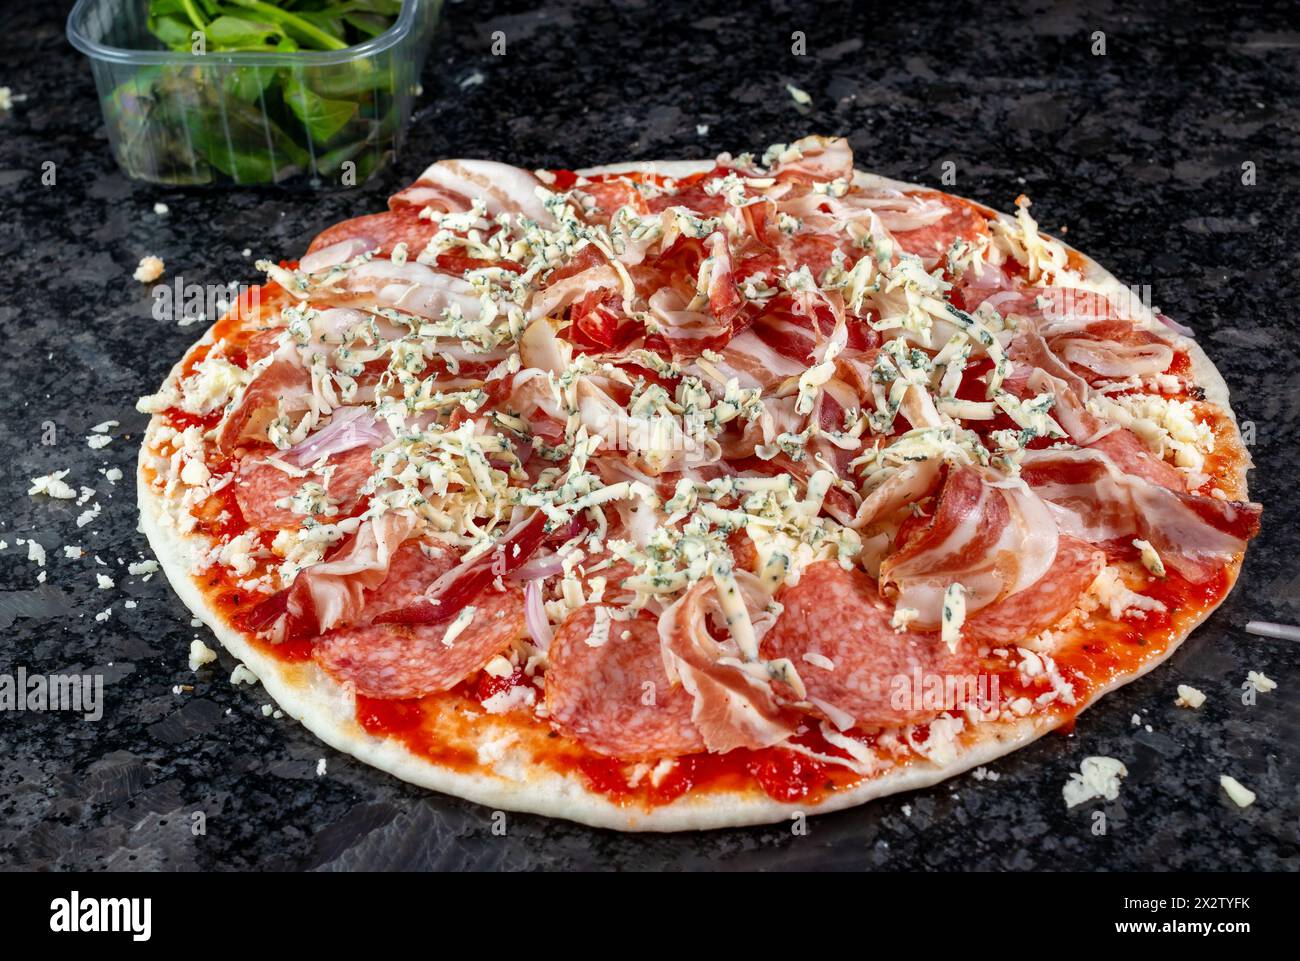 Sehen Sie eine verlockende Pizza mit Schinken, Salami, Käse, Zwiebeln und frischen Kräutern, auf einer Granit-Küchenarbeitsplatte ruhen und gespannt auf seine tu warten Stockfoto